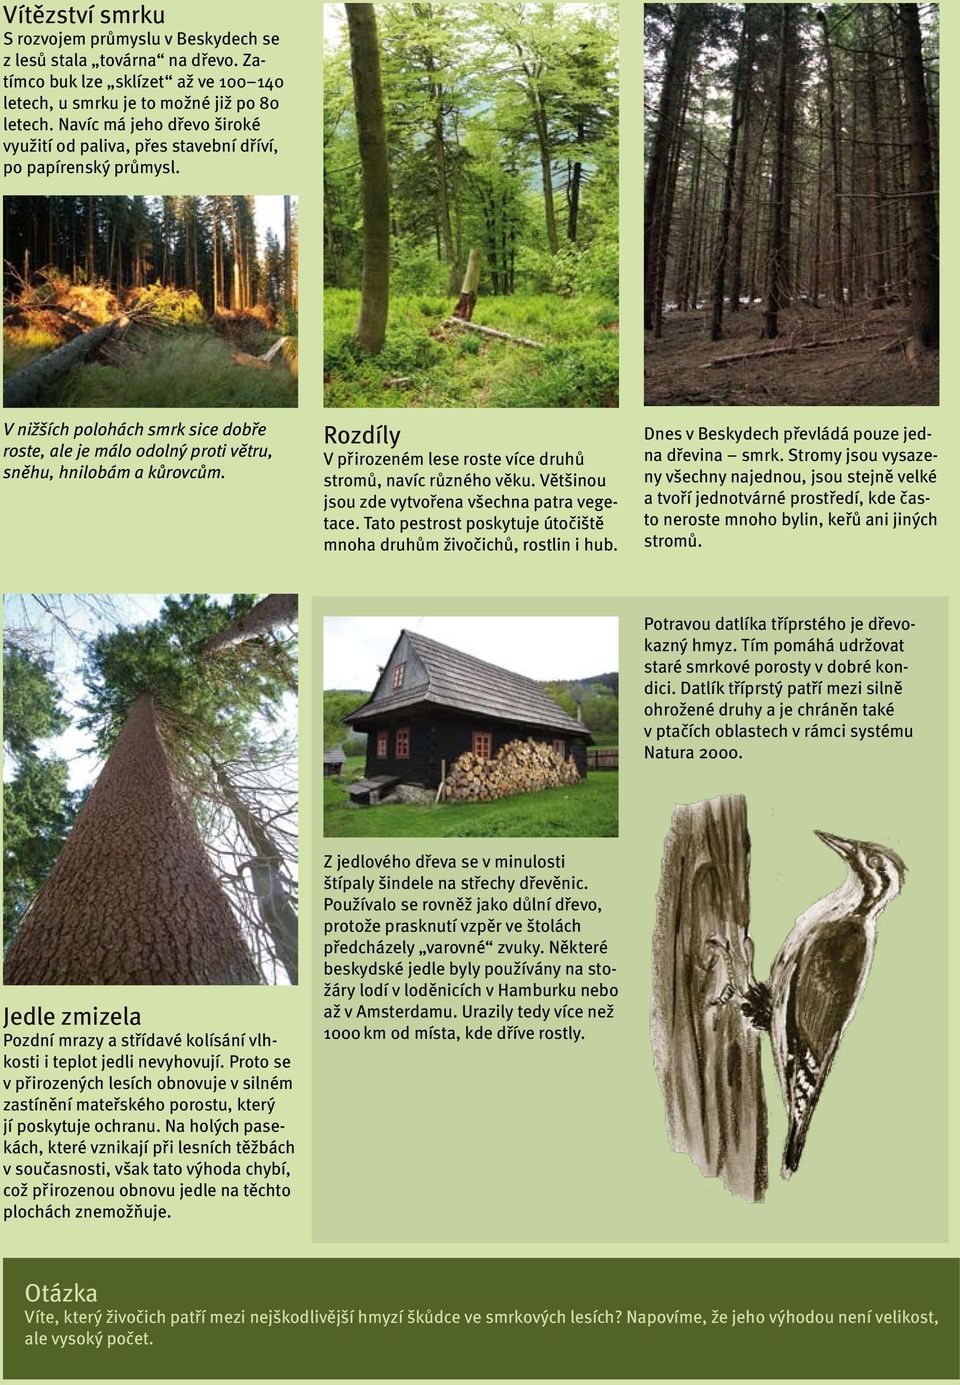 Rozdíly V přirozeném lese roste více druhů stromů, navíc různého věku. Většinou jsou zde vytvořena všechna patra vegetace. Tato pestrost poskytuje útočiště mnoha druhům živočichů, rostlin i hub.